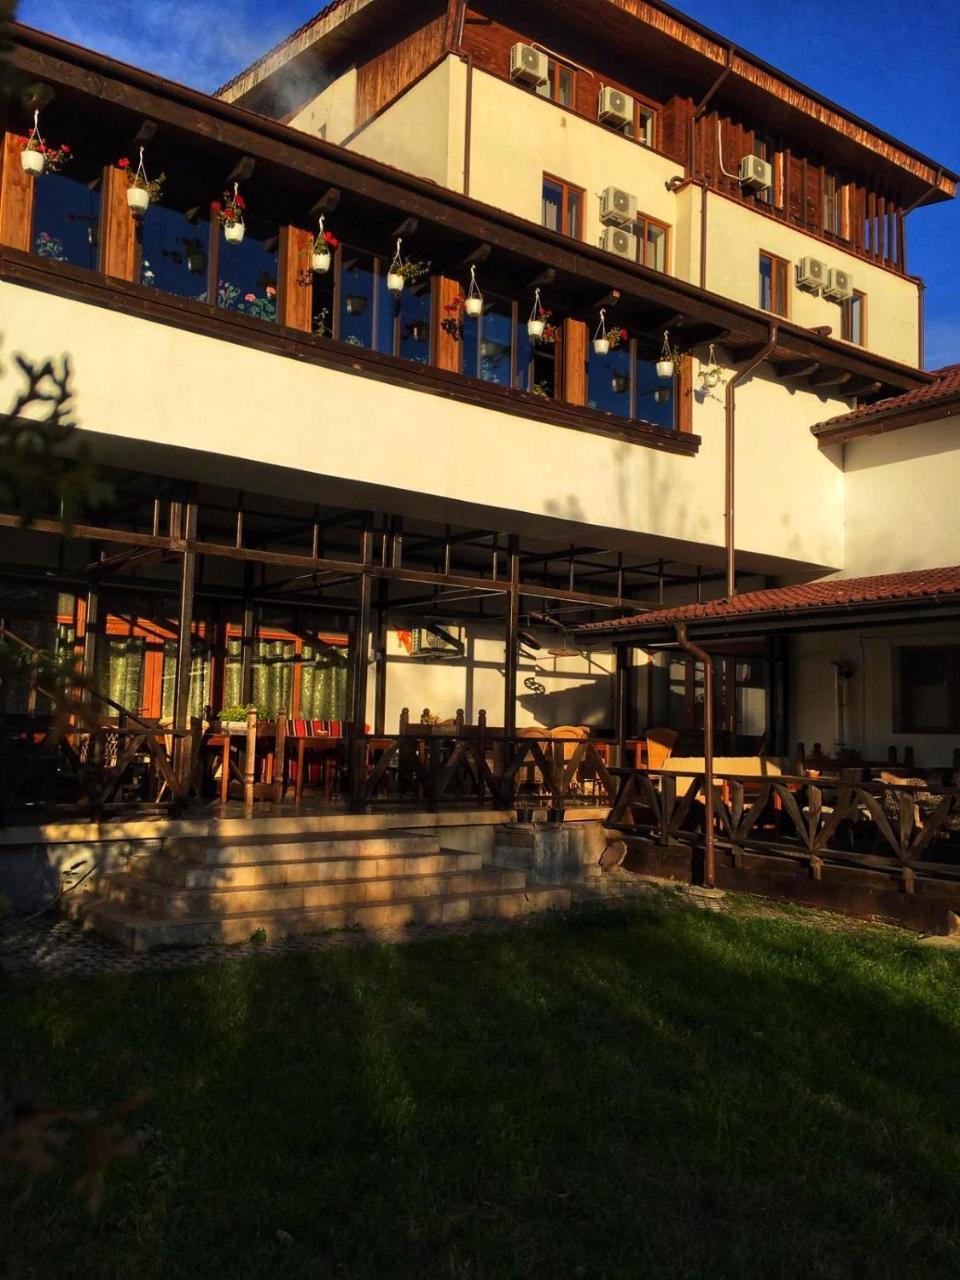 Hotel Casa Vlahilor Râmnicu Vâlcea 외부 사진